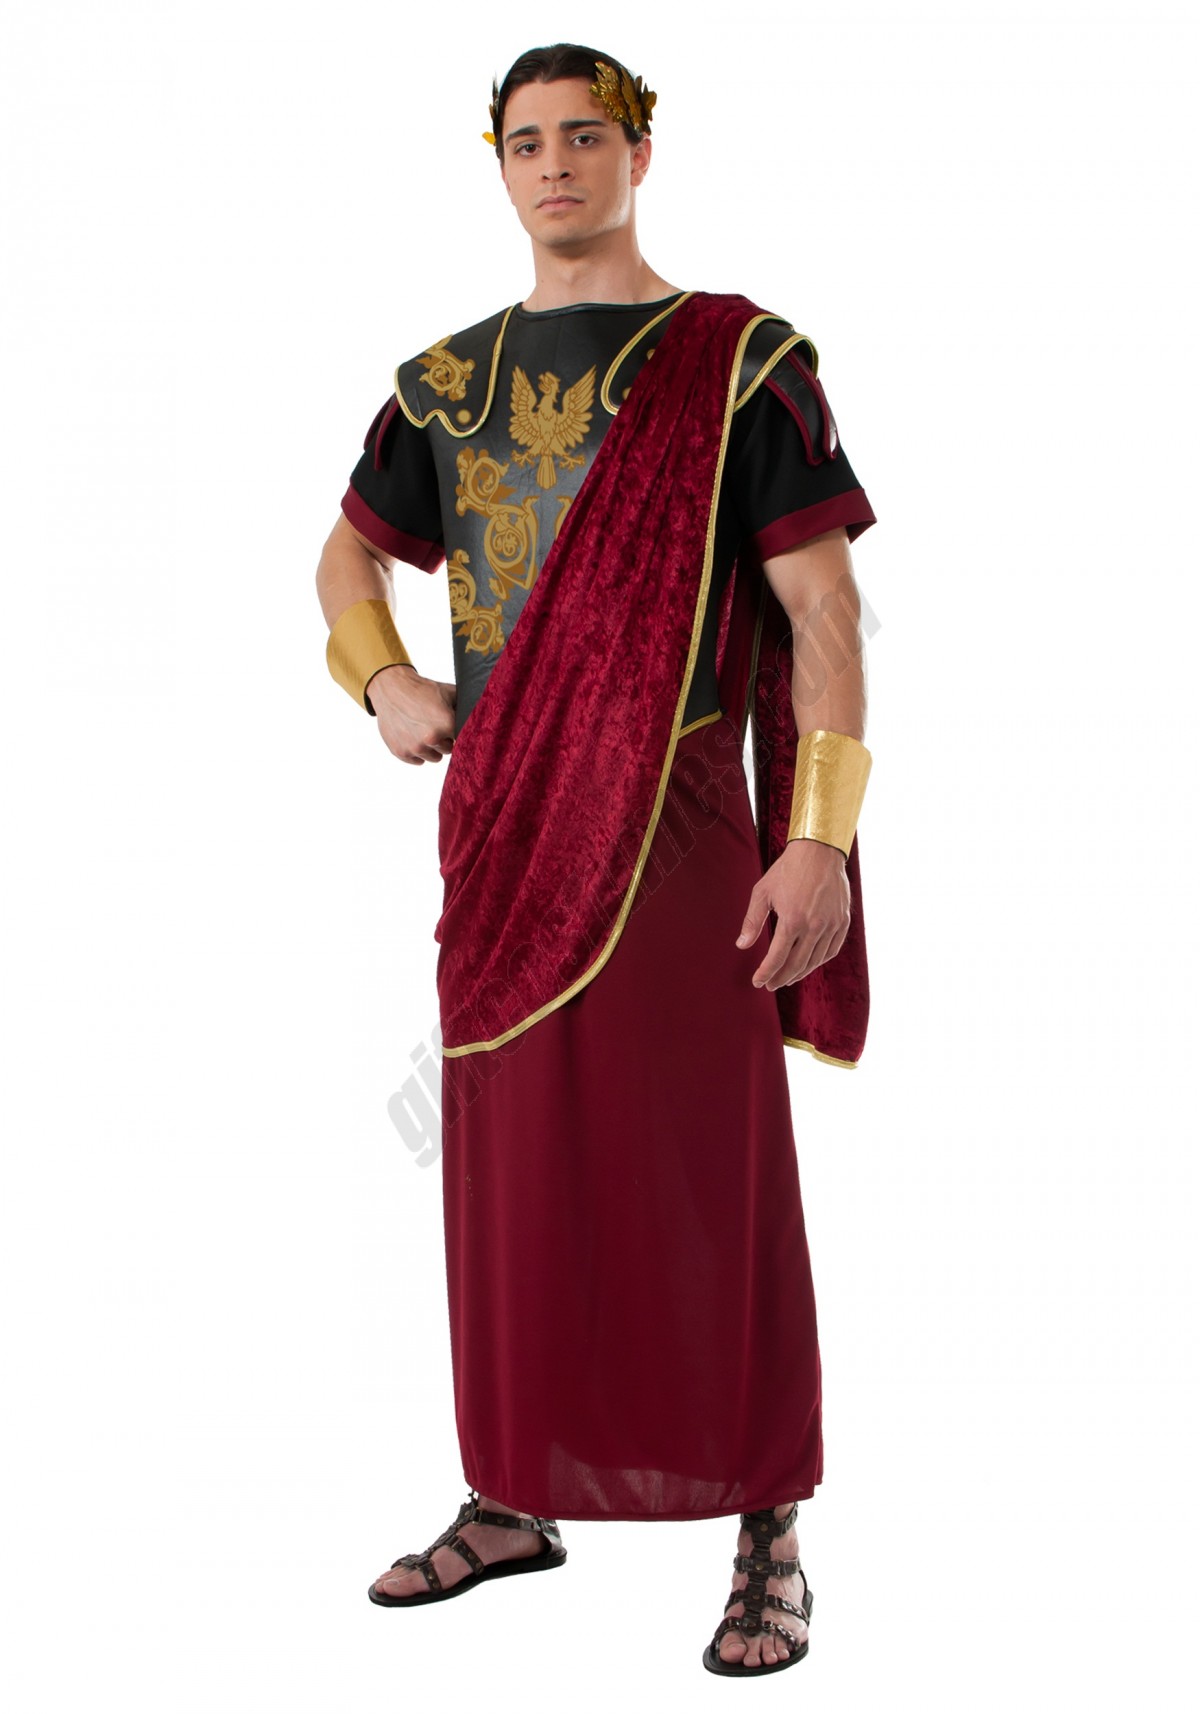 Julius Caesar Costume Promotions - -0